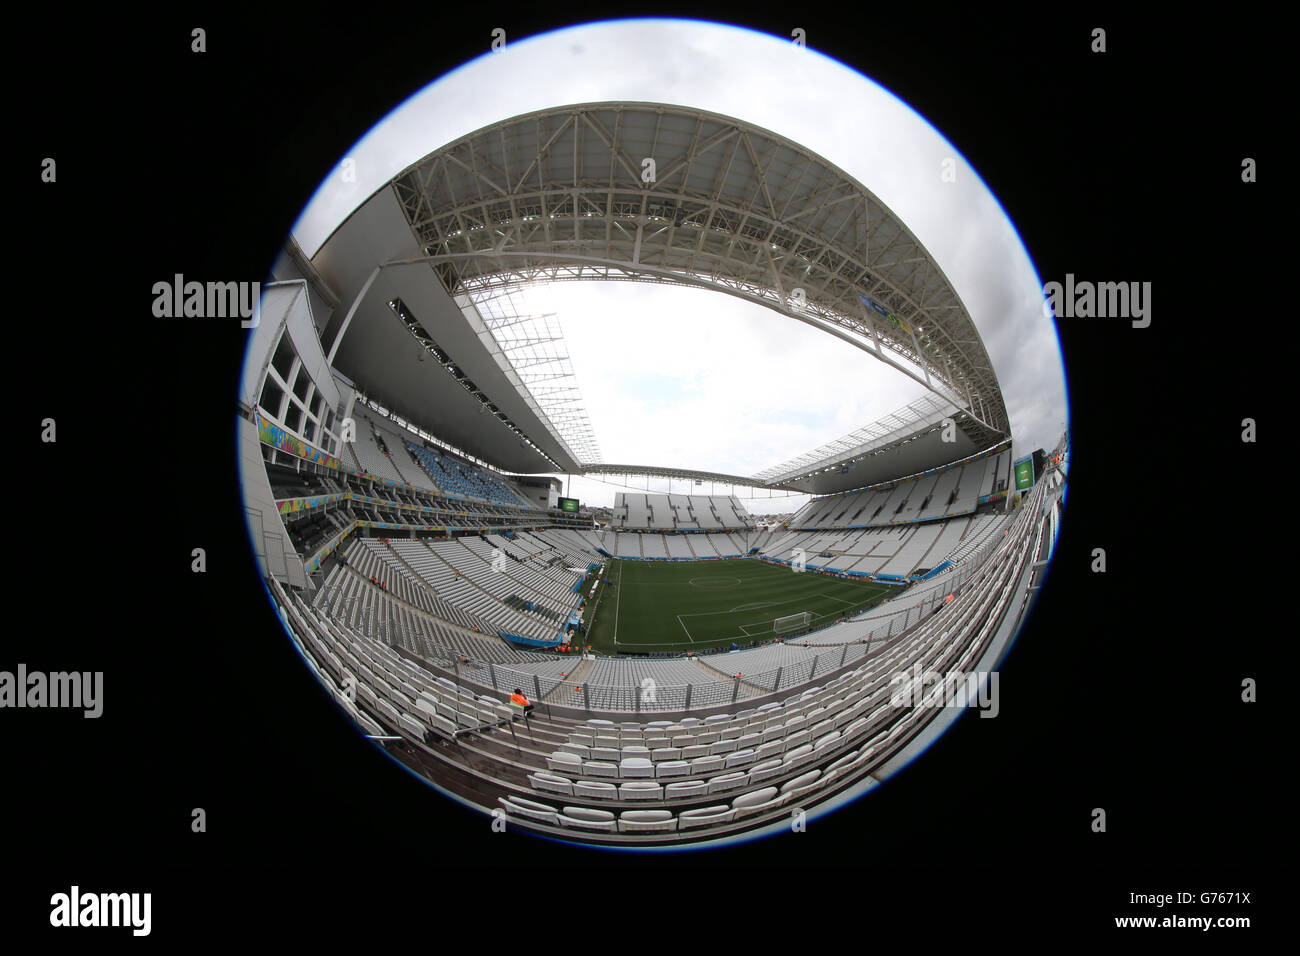 Una visione generale dell'Arena de Sao Paulo, prima della semifinale della Coppa del mondo FIFA 2014 tra Paesi Bassi e Argentina Foto Stock